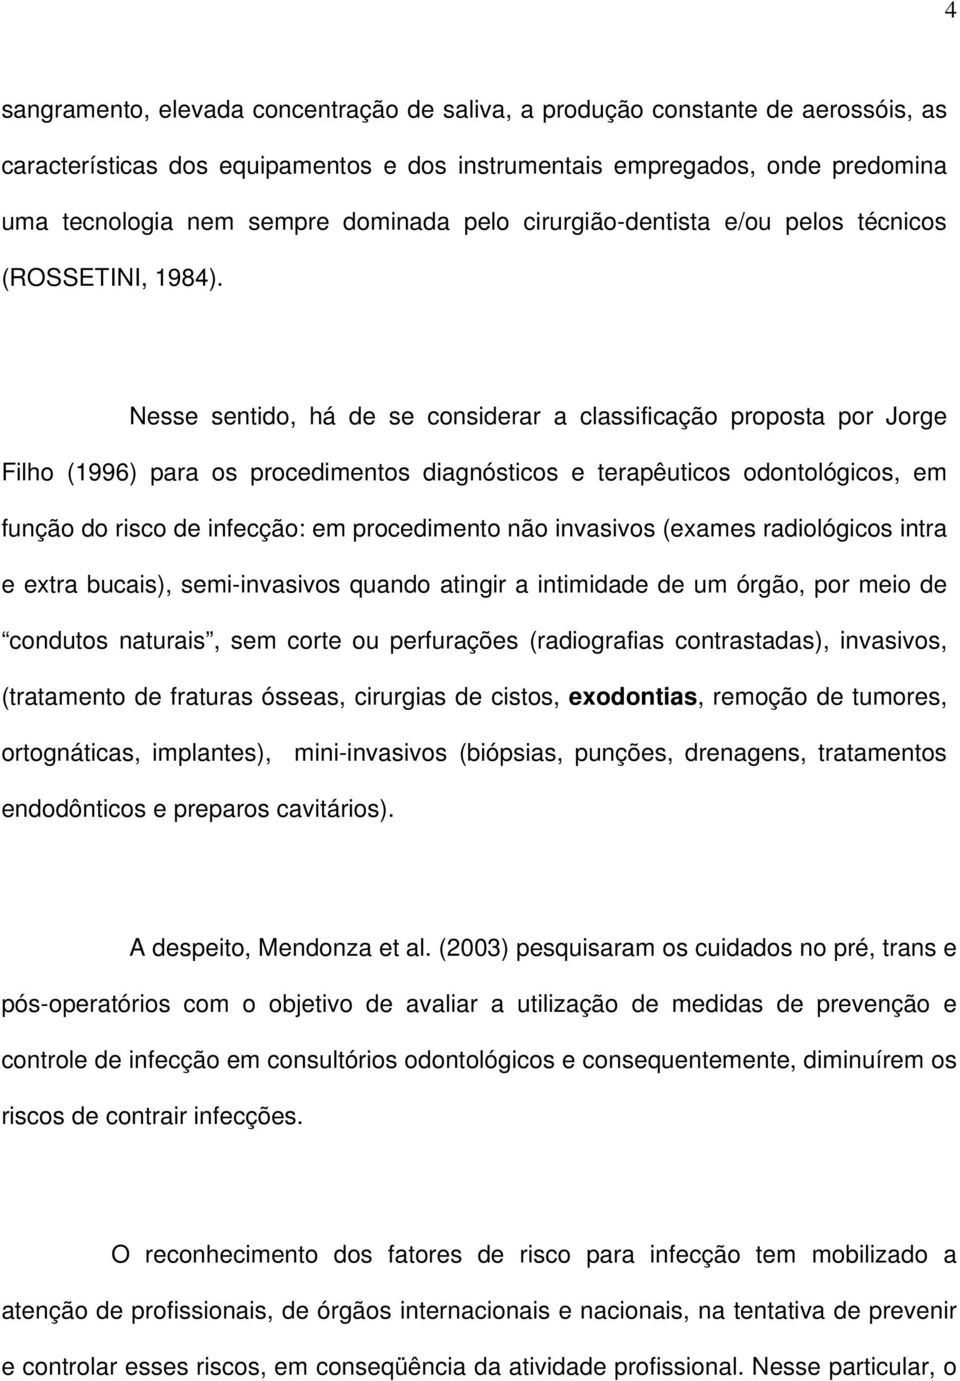 Nesse sentido, há de se considerar a classificação proposta por Jorge Filho (1996) para os procedimentos diagnósticos e terapêuticos odontológicos, em função do risco de infecção: em procedimento não